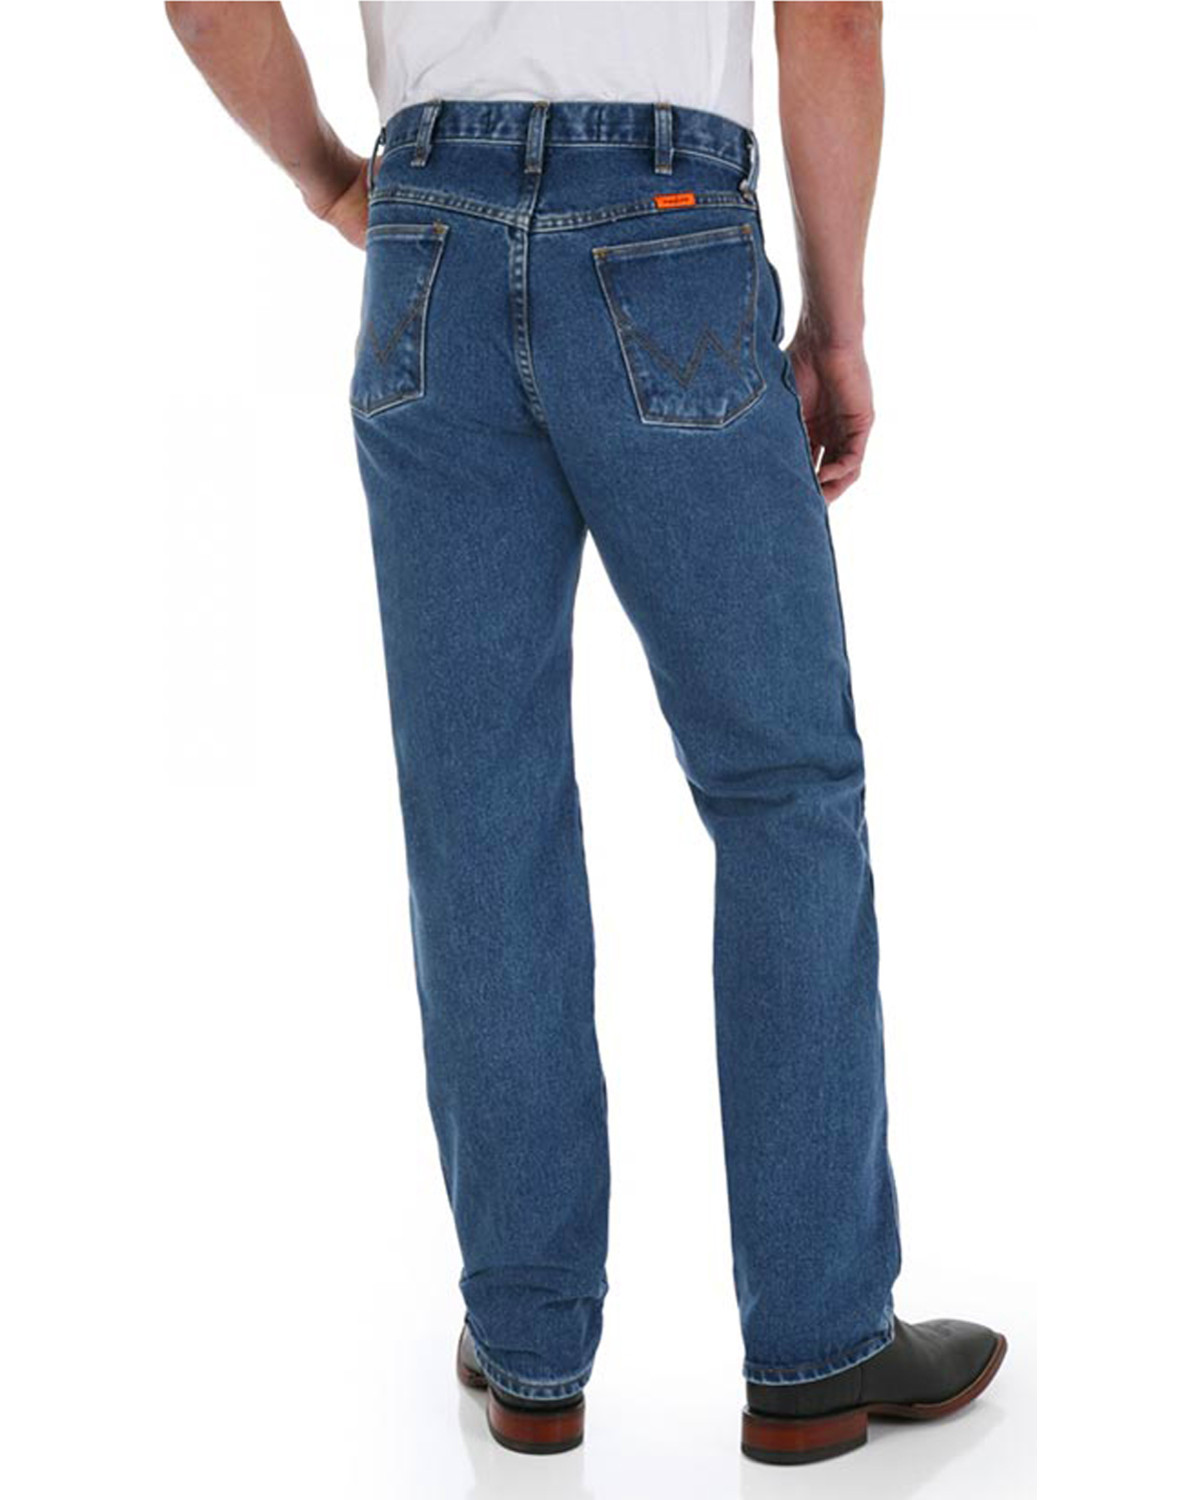 Wrangler Men's FR Classic Fit Straight Jeans